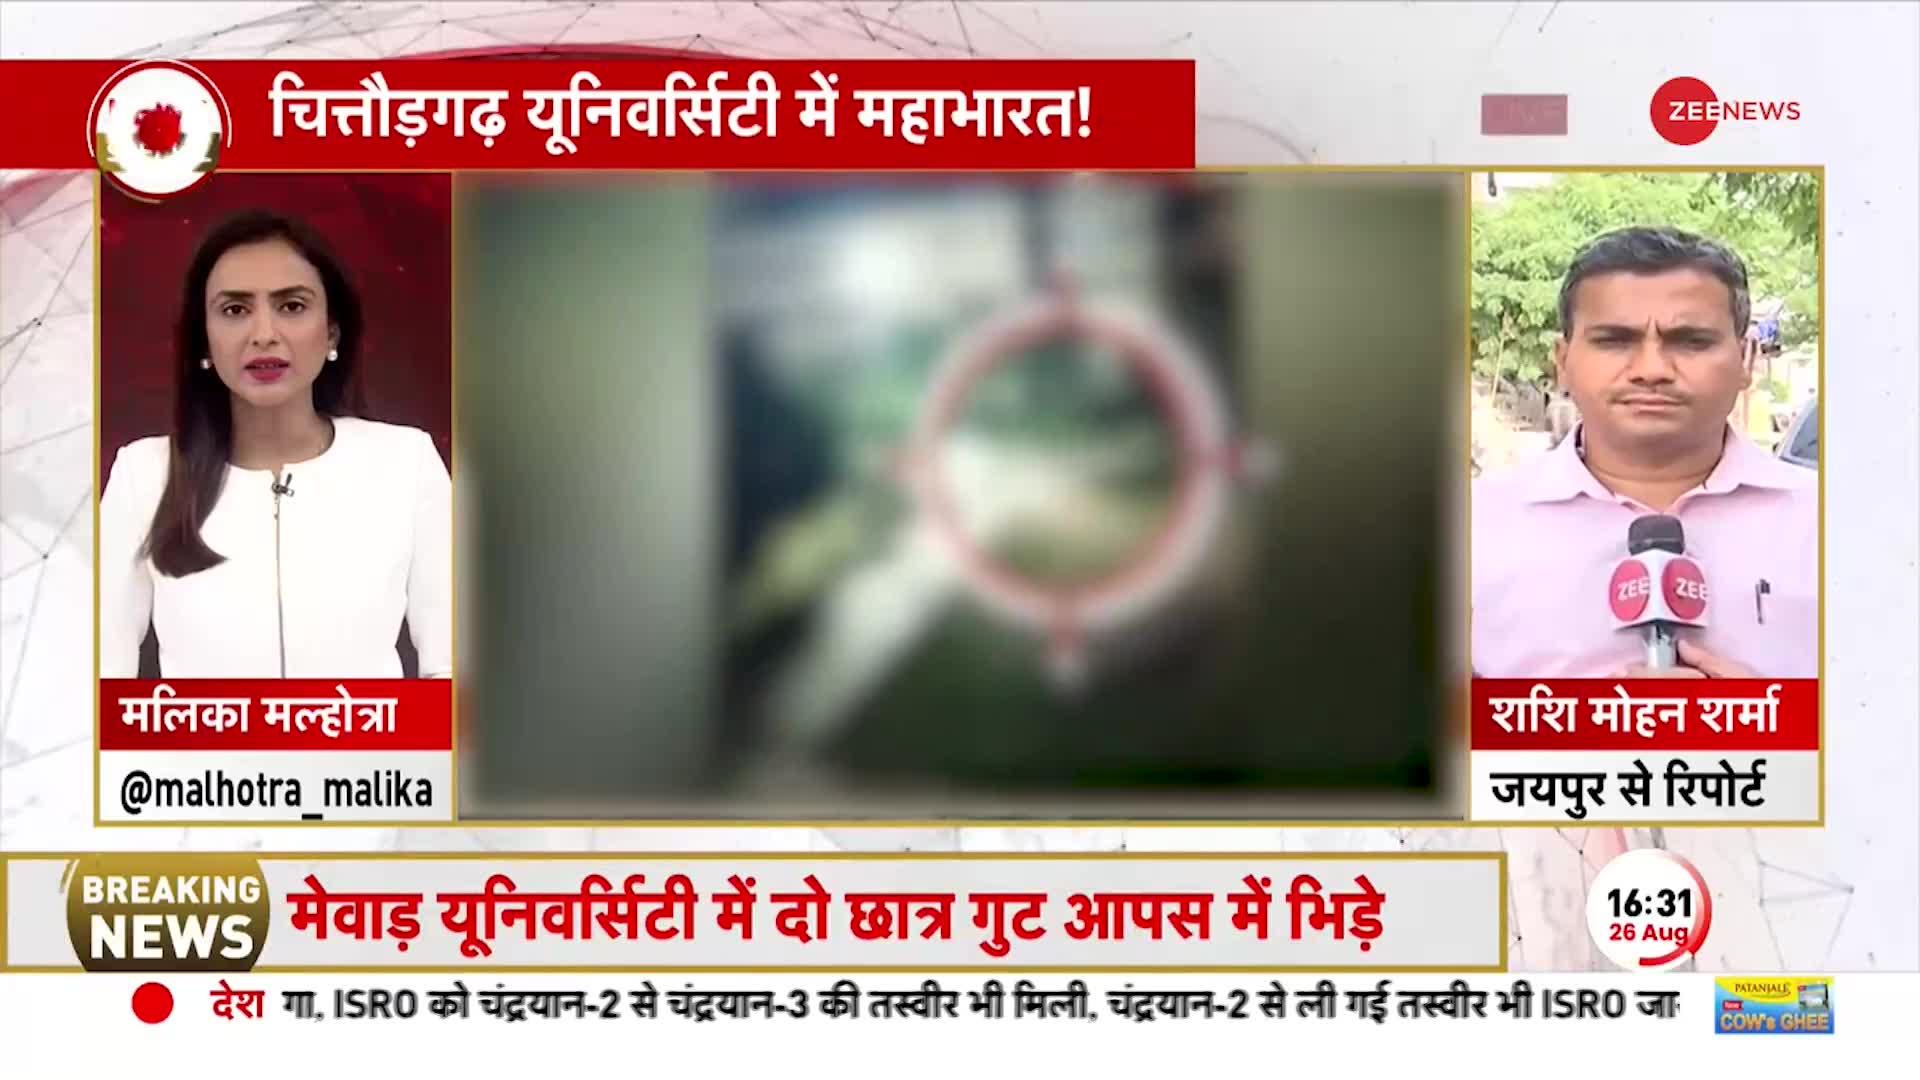 Breaking News: राजस्थान की मेवाड़ यूनिवर्सिटी में हिंसक झड़प, छात्रों के दो गुटों के बीच मारपीट